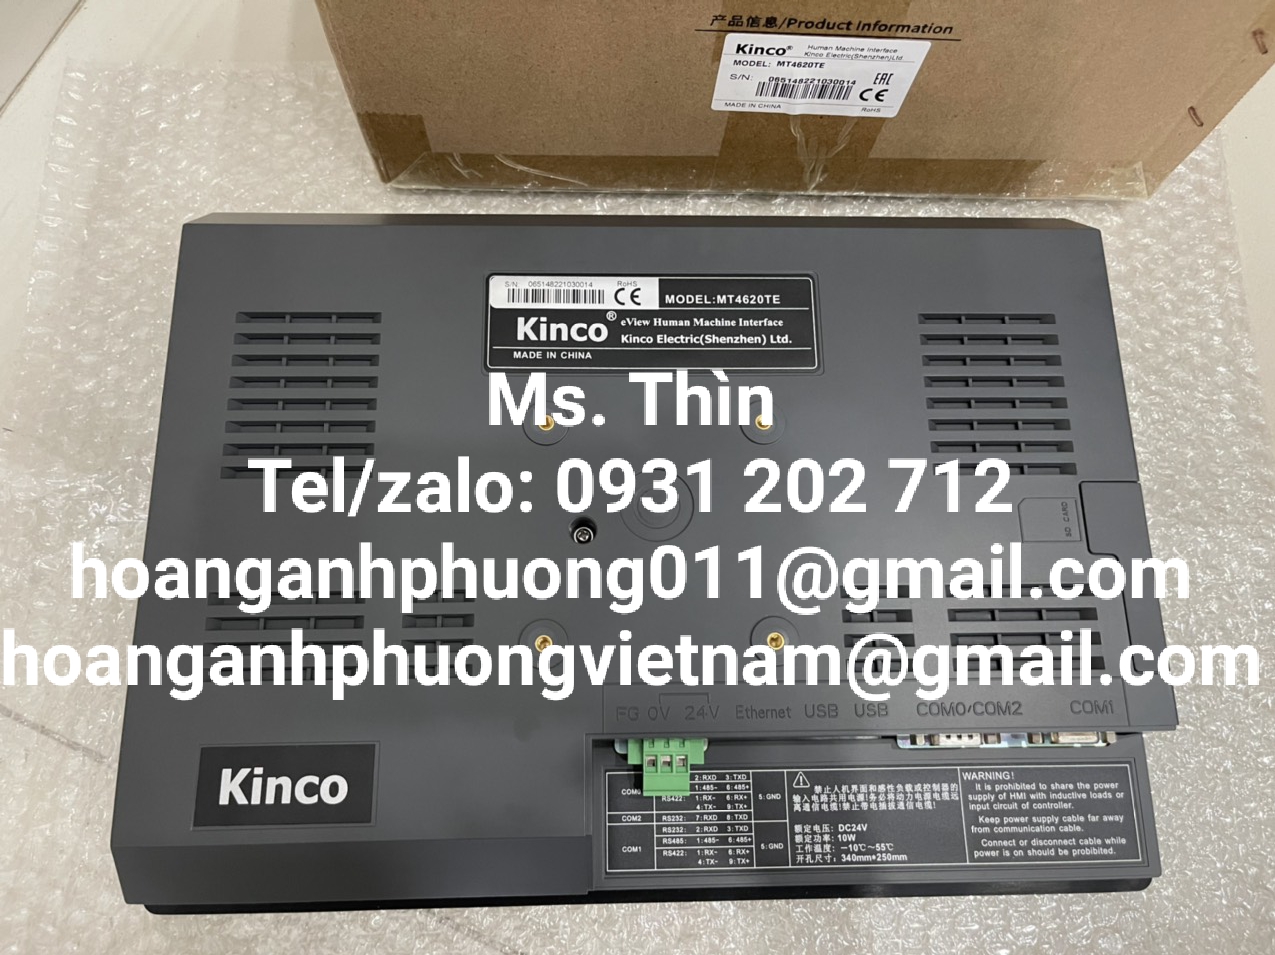 MT4620TE  Màn hình Kinco  hàng nhập khẩu  new 100%